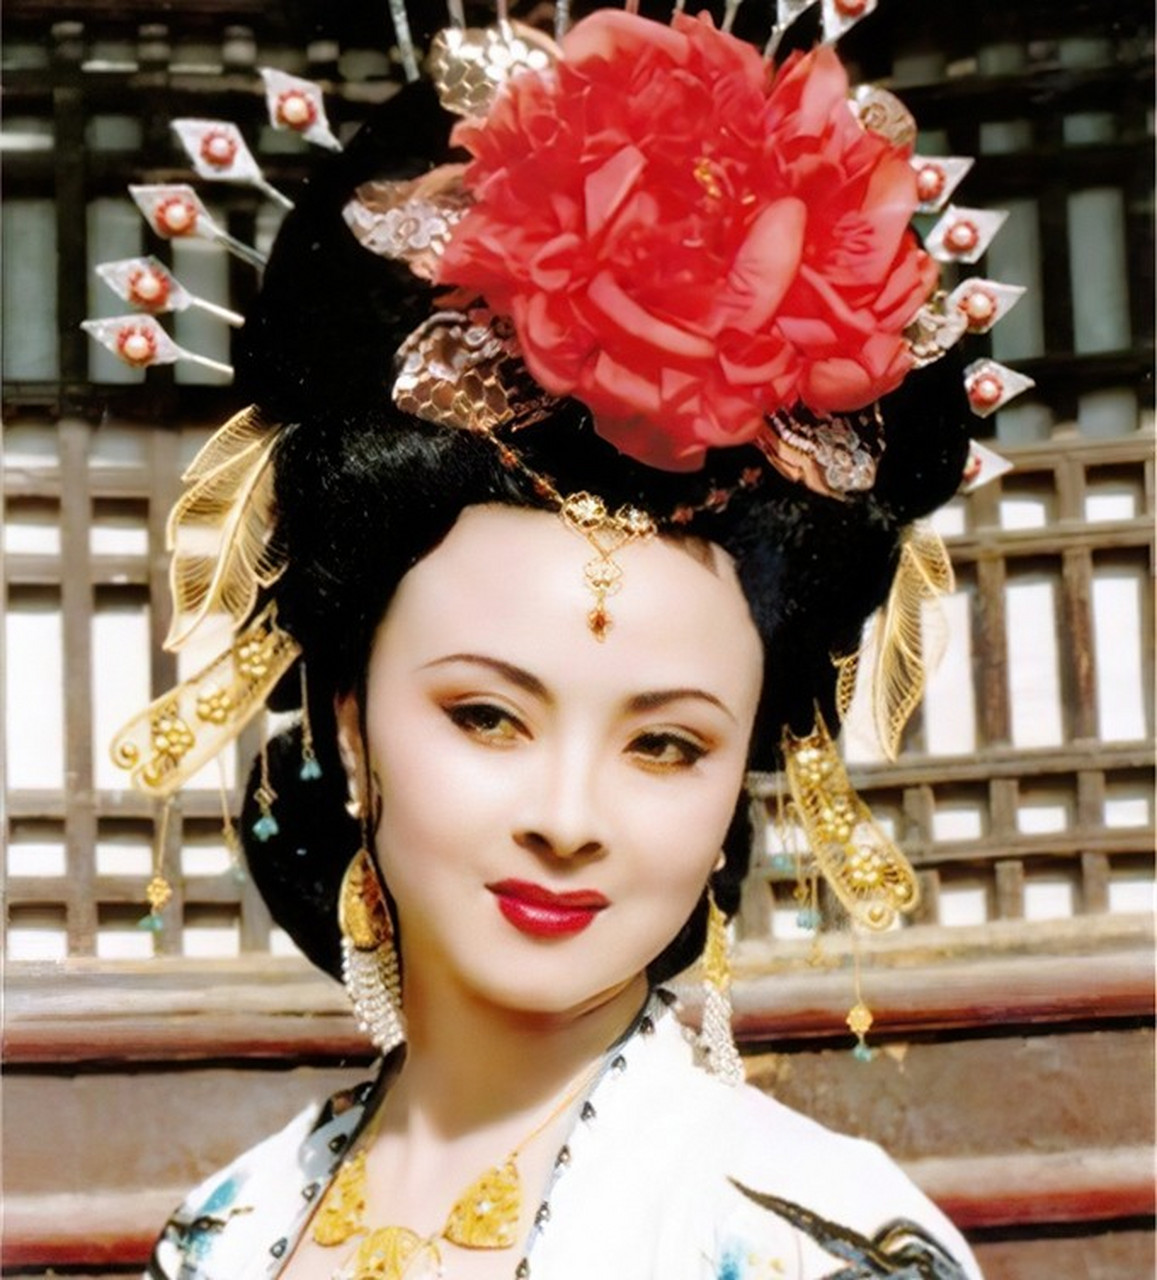 杨贵妃,大唐盛世的象征,是当时人们对自己美好青春的一个梦